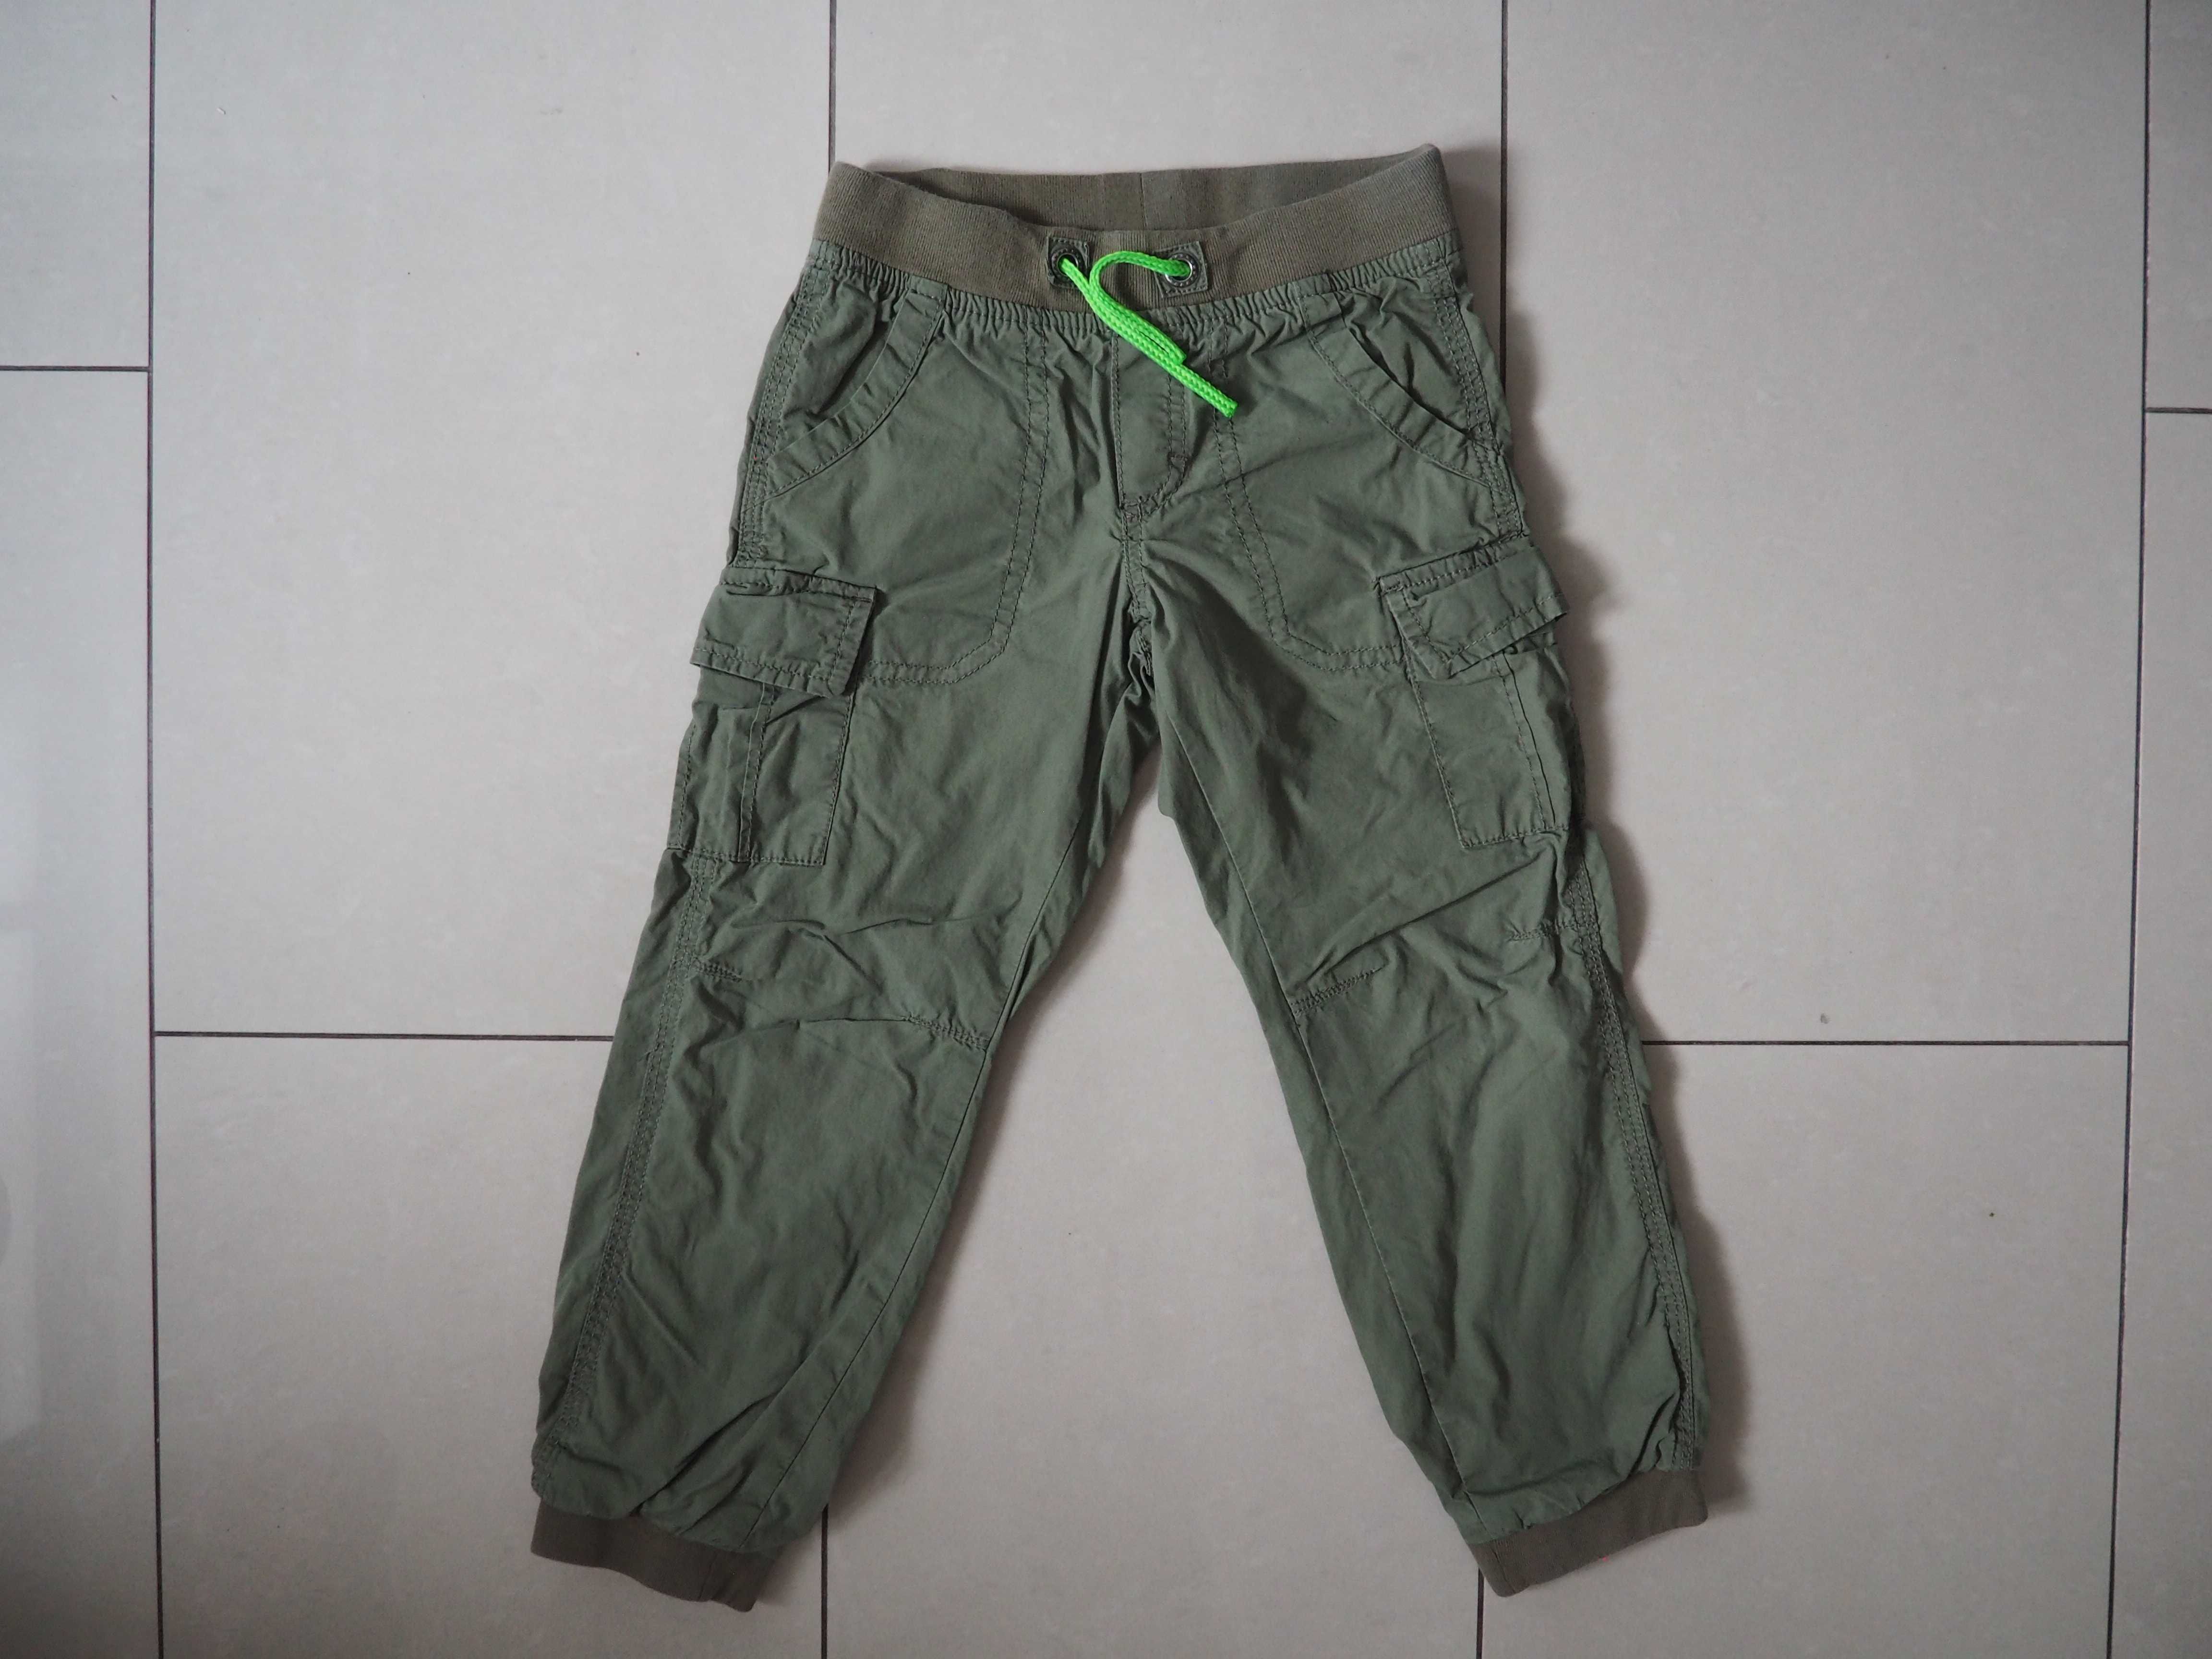 Spodnie ocieplane spodnie na zimę ciepłe R.116 KIK j.NOWE